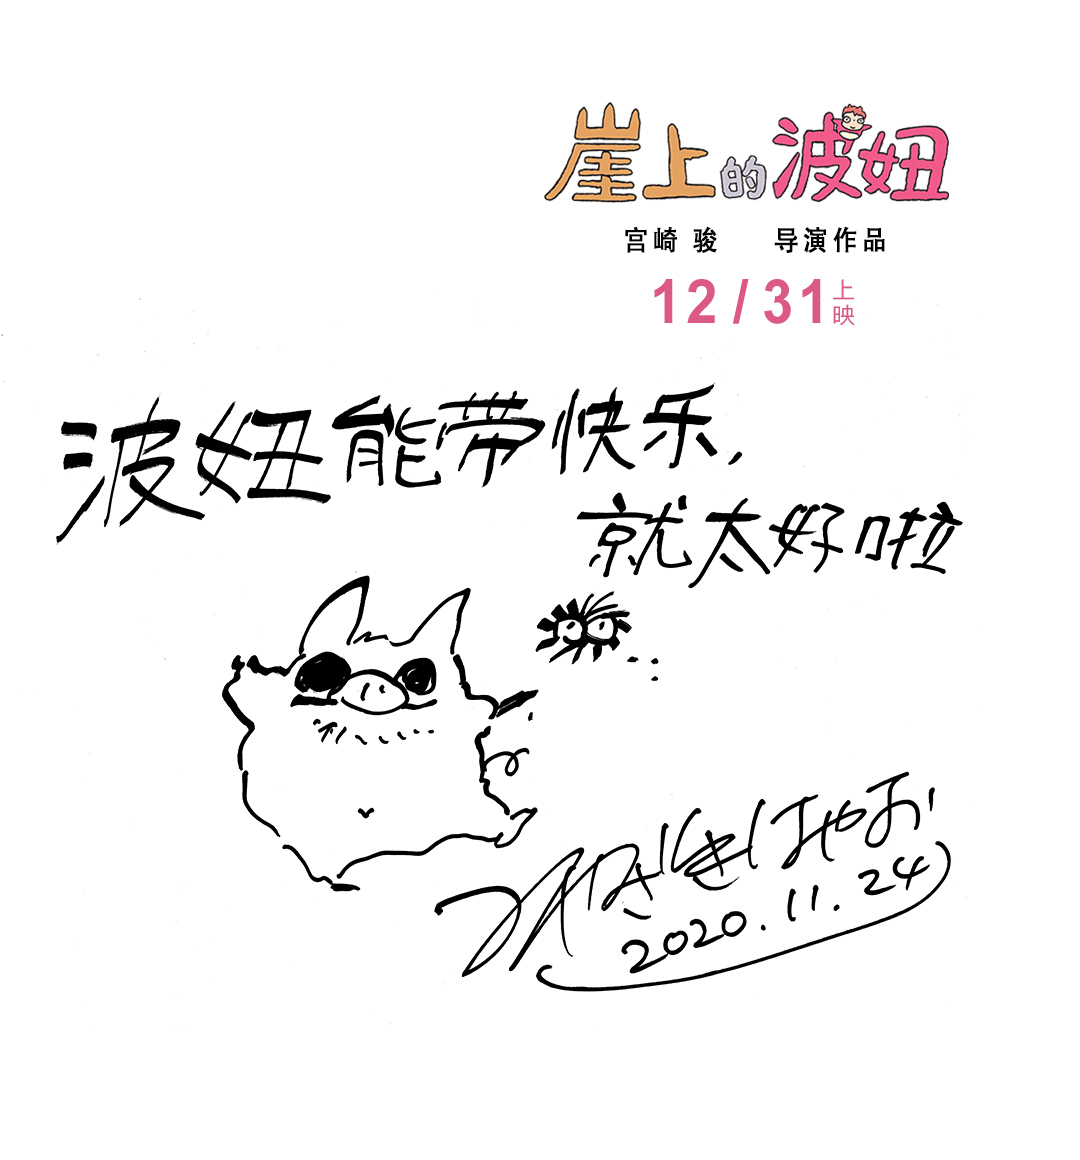 动画电影《悬崖上的金鱼姬》内地定档12月31日上映，宫崎骏手写信公开 ​​​​